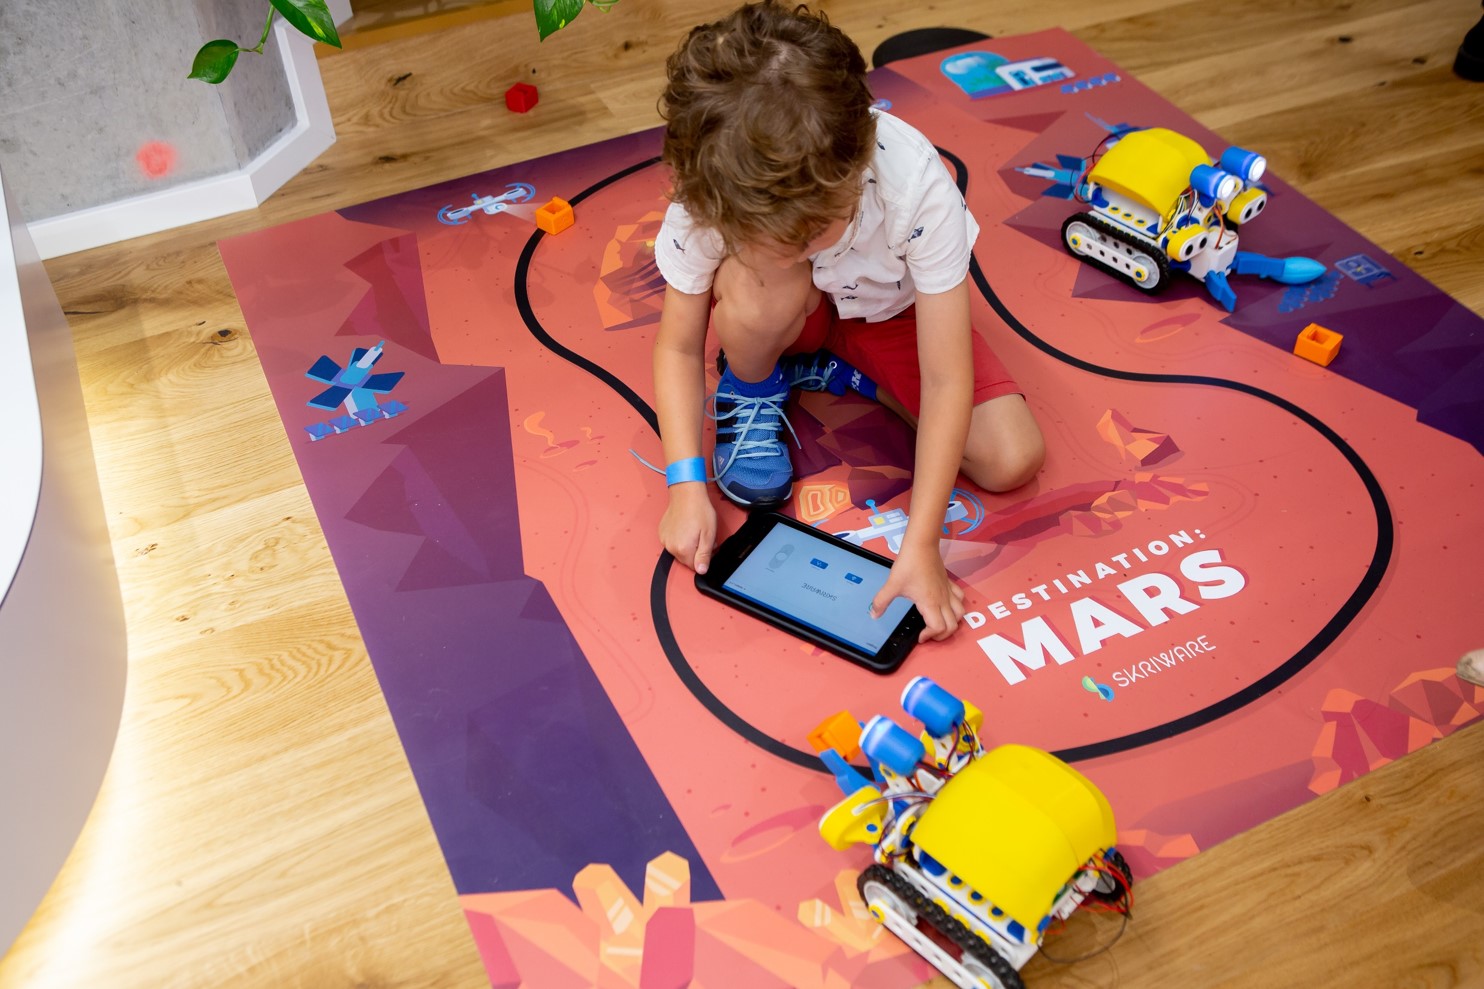 Na planszy z napisem „Destination Mars”, siedzi chłopiec z tabletem w ręku. Po jego lewej i prawej stronie znajdują się roboty.